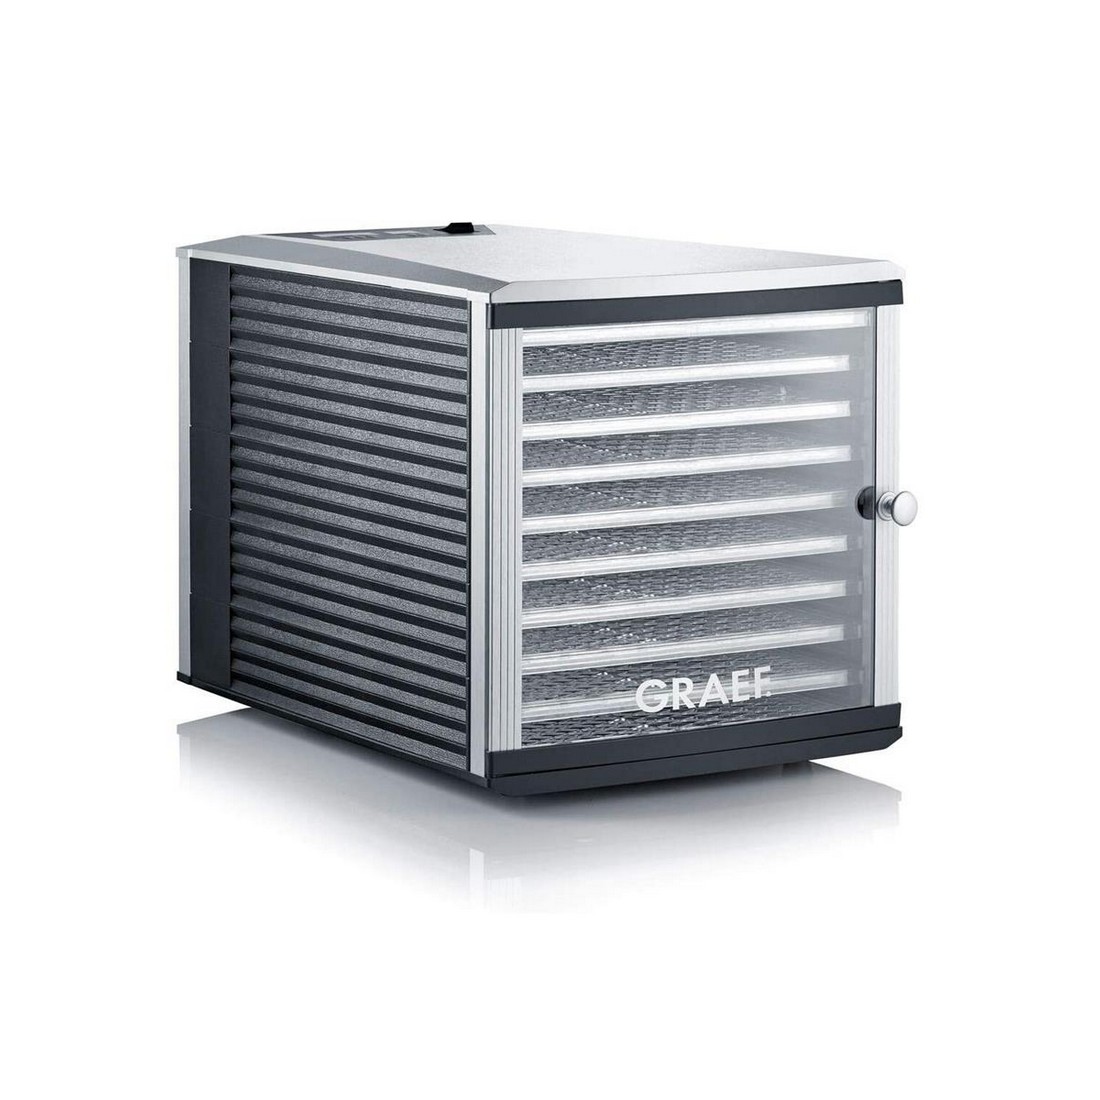 Graef - DA510 dryer